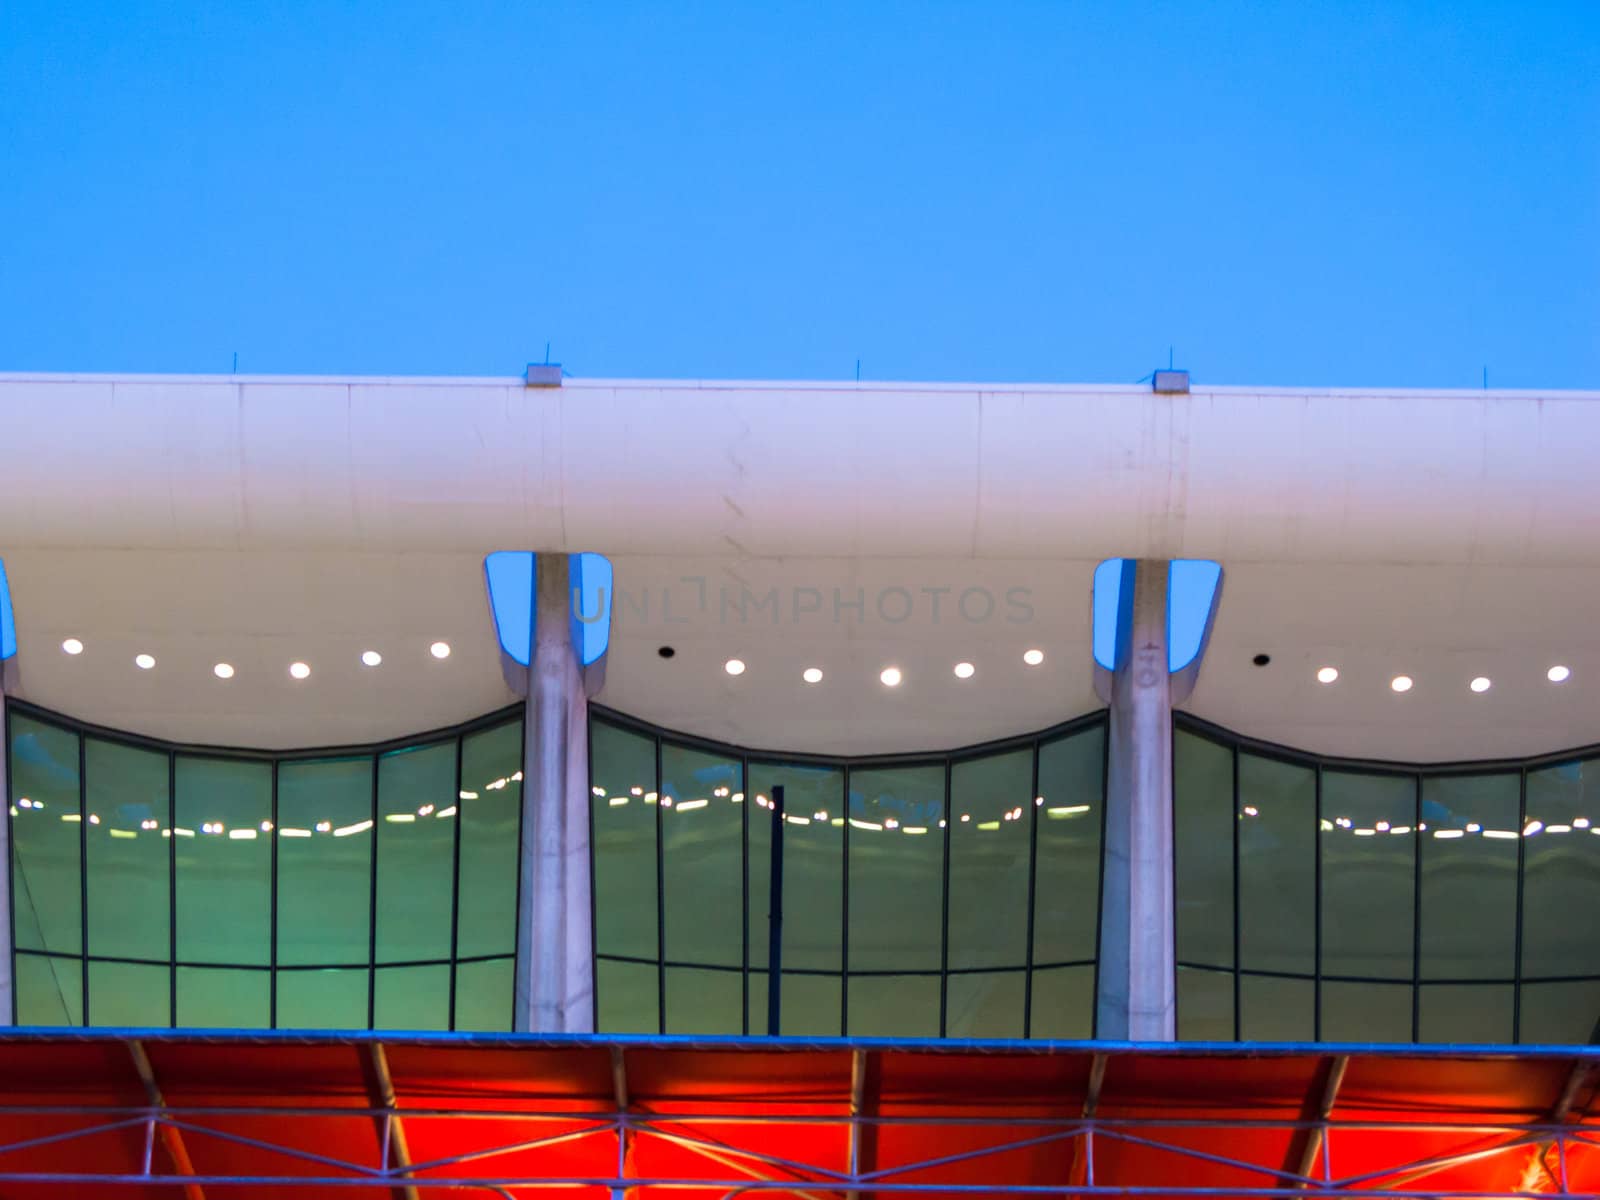 Dulles International Airport (IAD) terminal, detail view